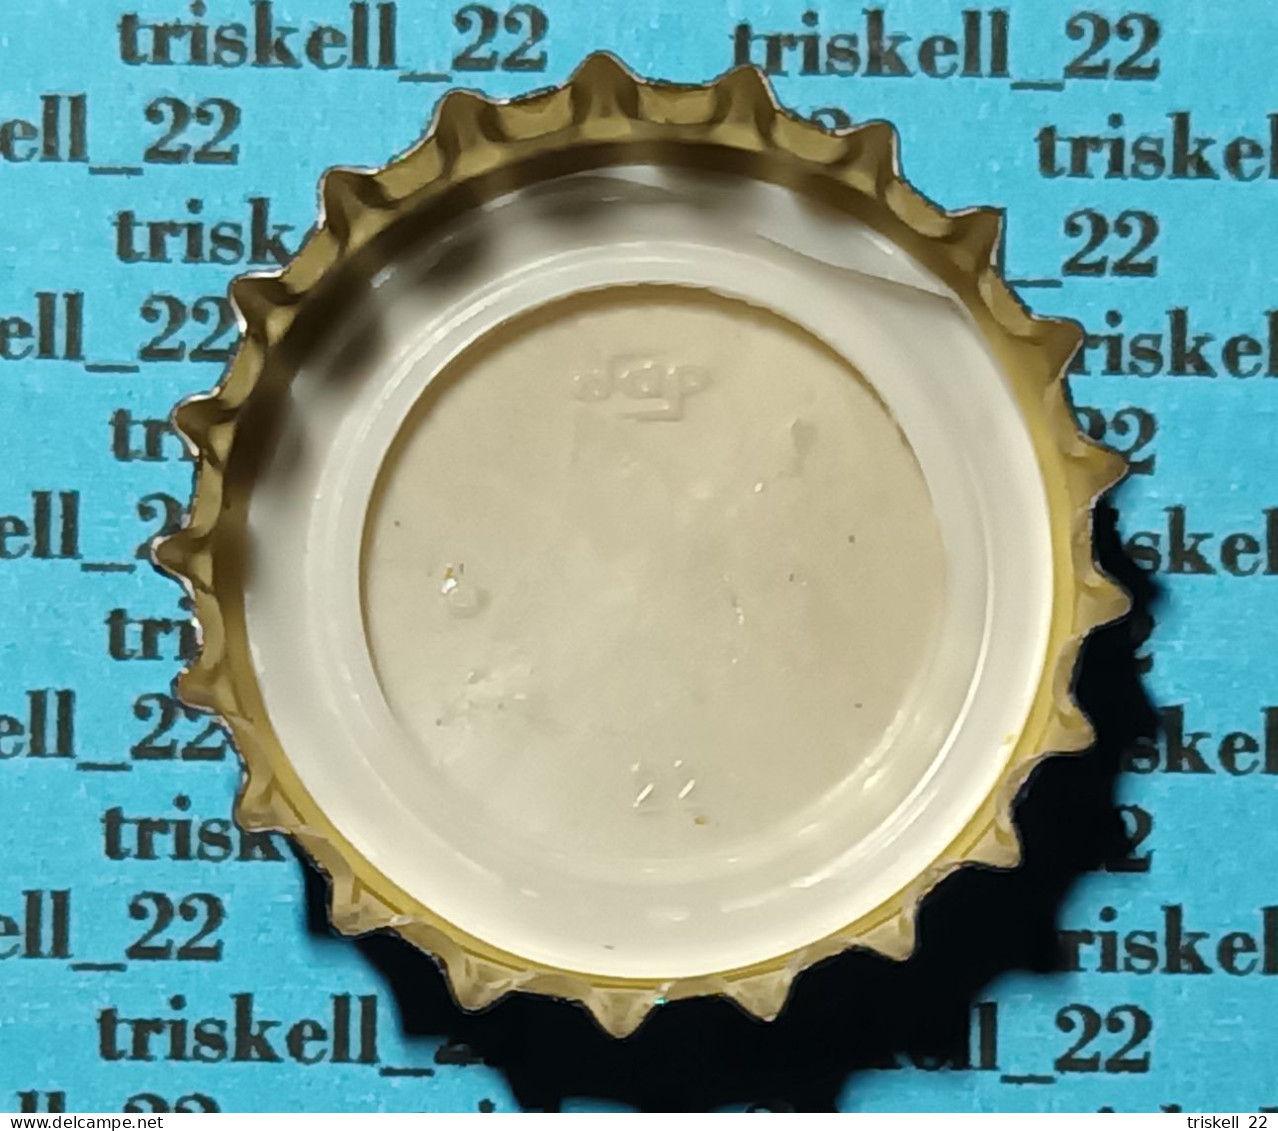 Birra Baladin   Lot N° 38 - Beer